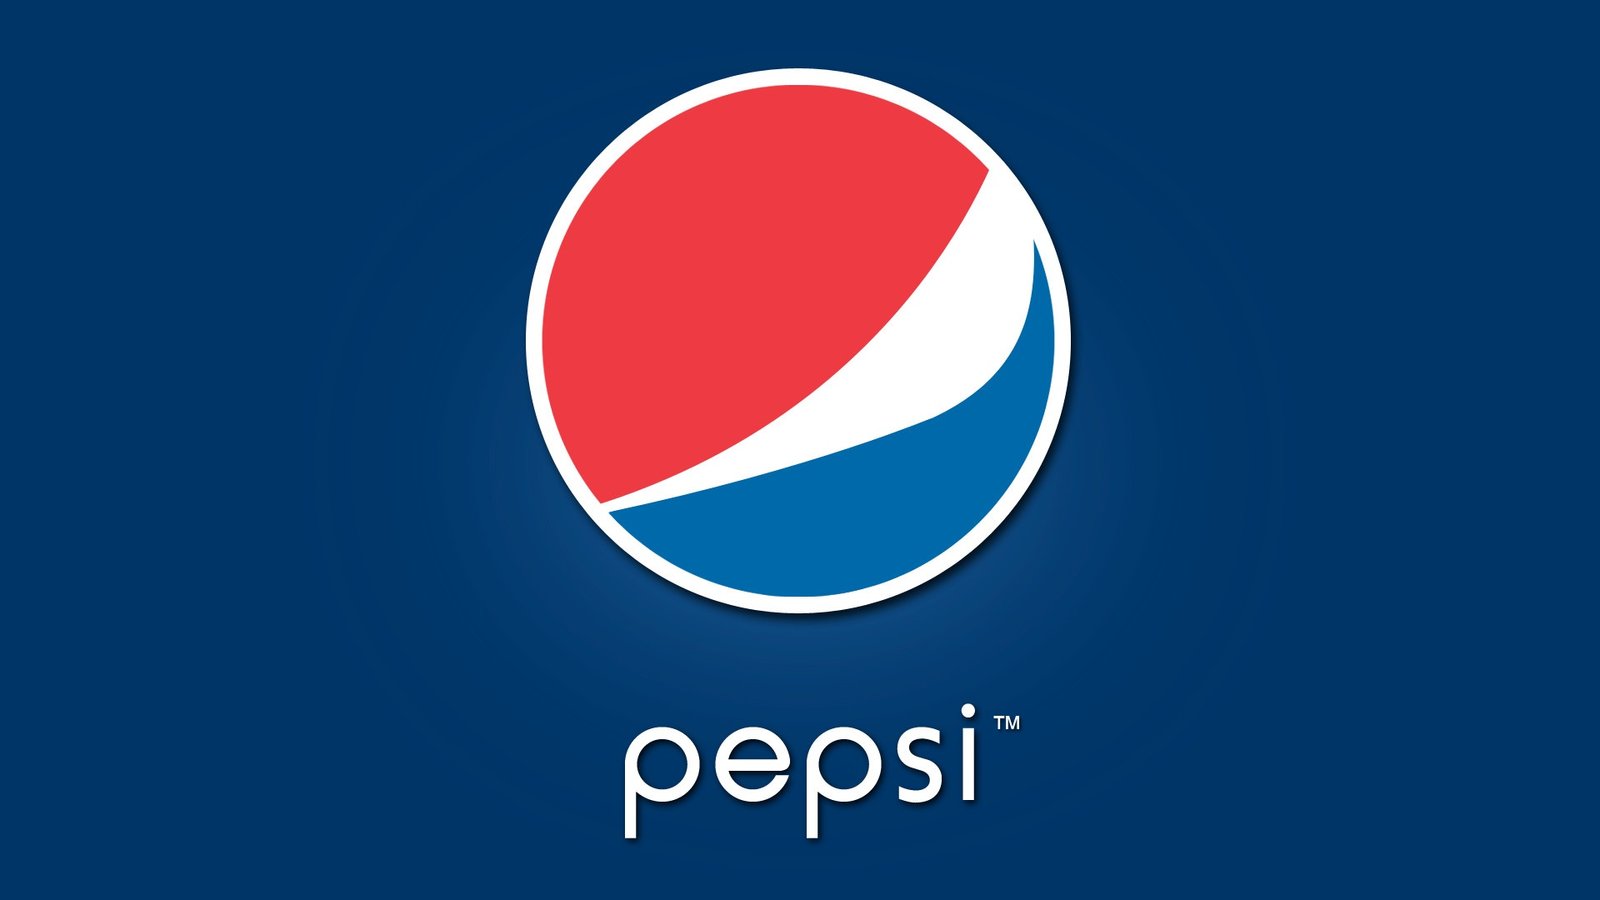 Pepsi: pepping-up the spirits around